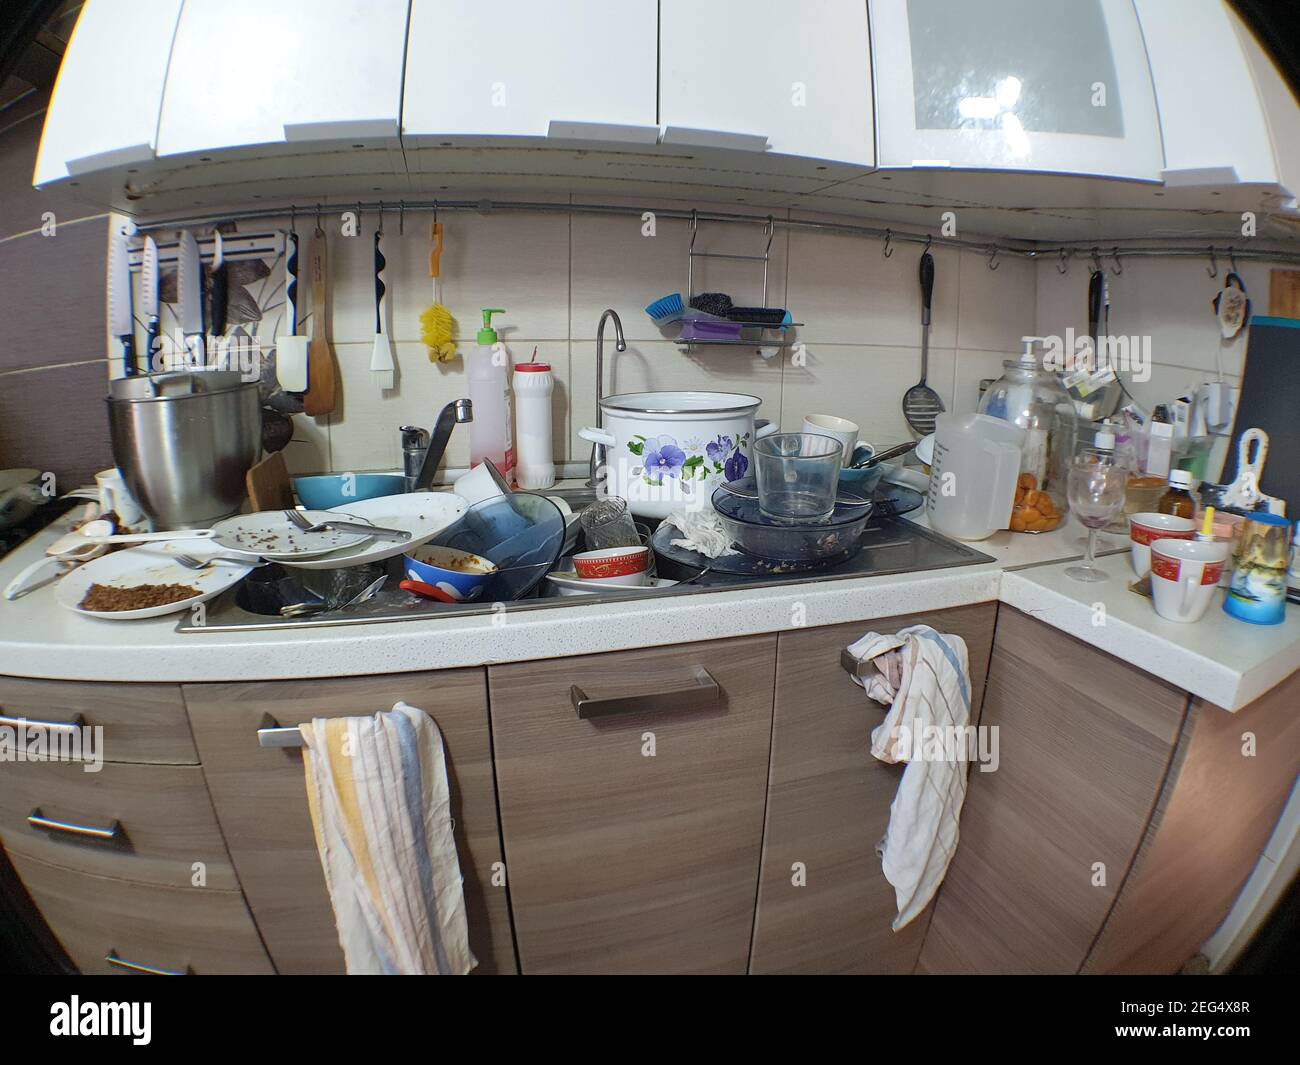 Schmutziges Geschirr in der Küche, Unterbrechungen und Unterbrechungen in der Wasserversorgung, eine schlampige Gastgeberin. Stockfoto